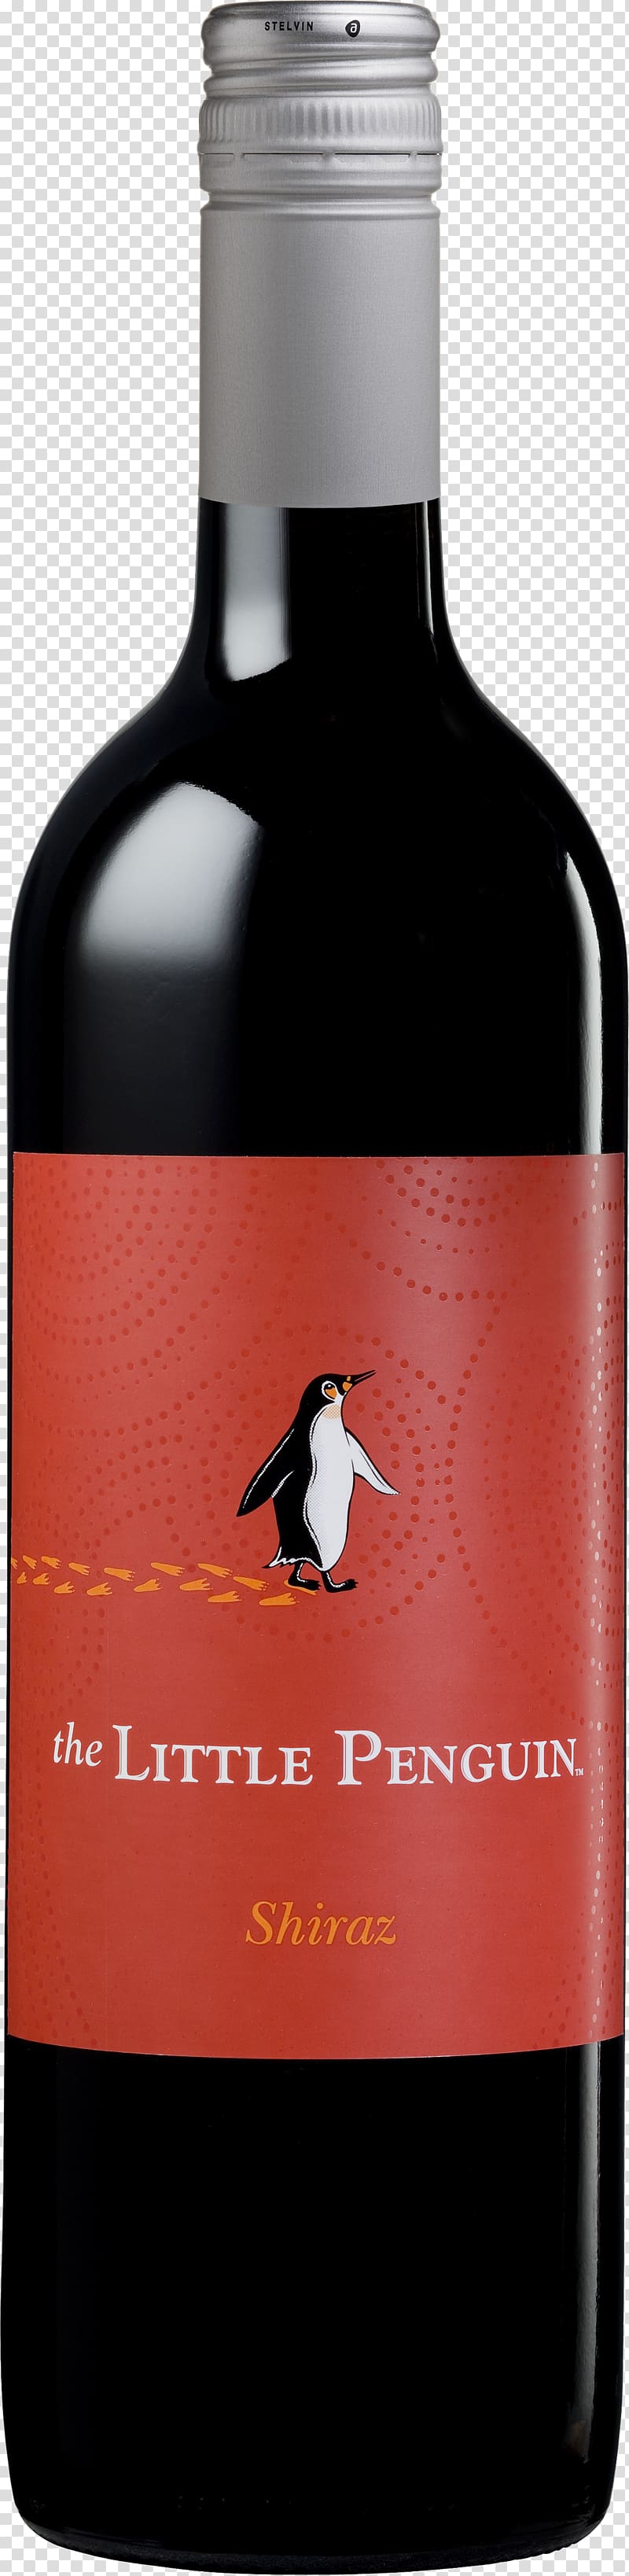 Liqueur Bronco Wine Company Merlot Shiraz, little penguin transparent background PNG clipart